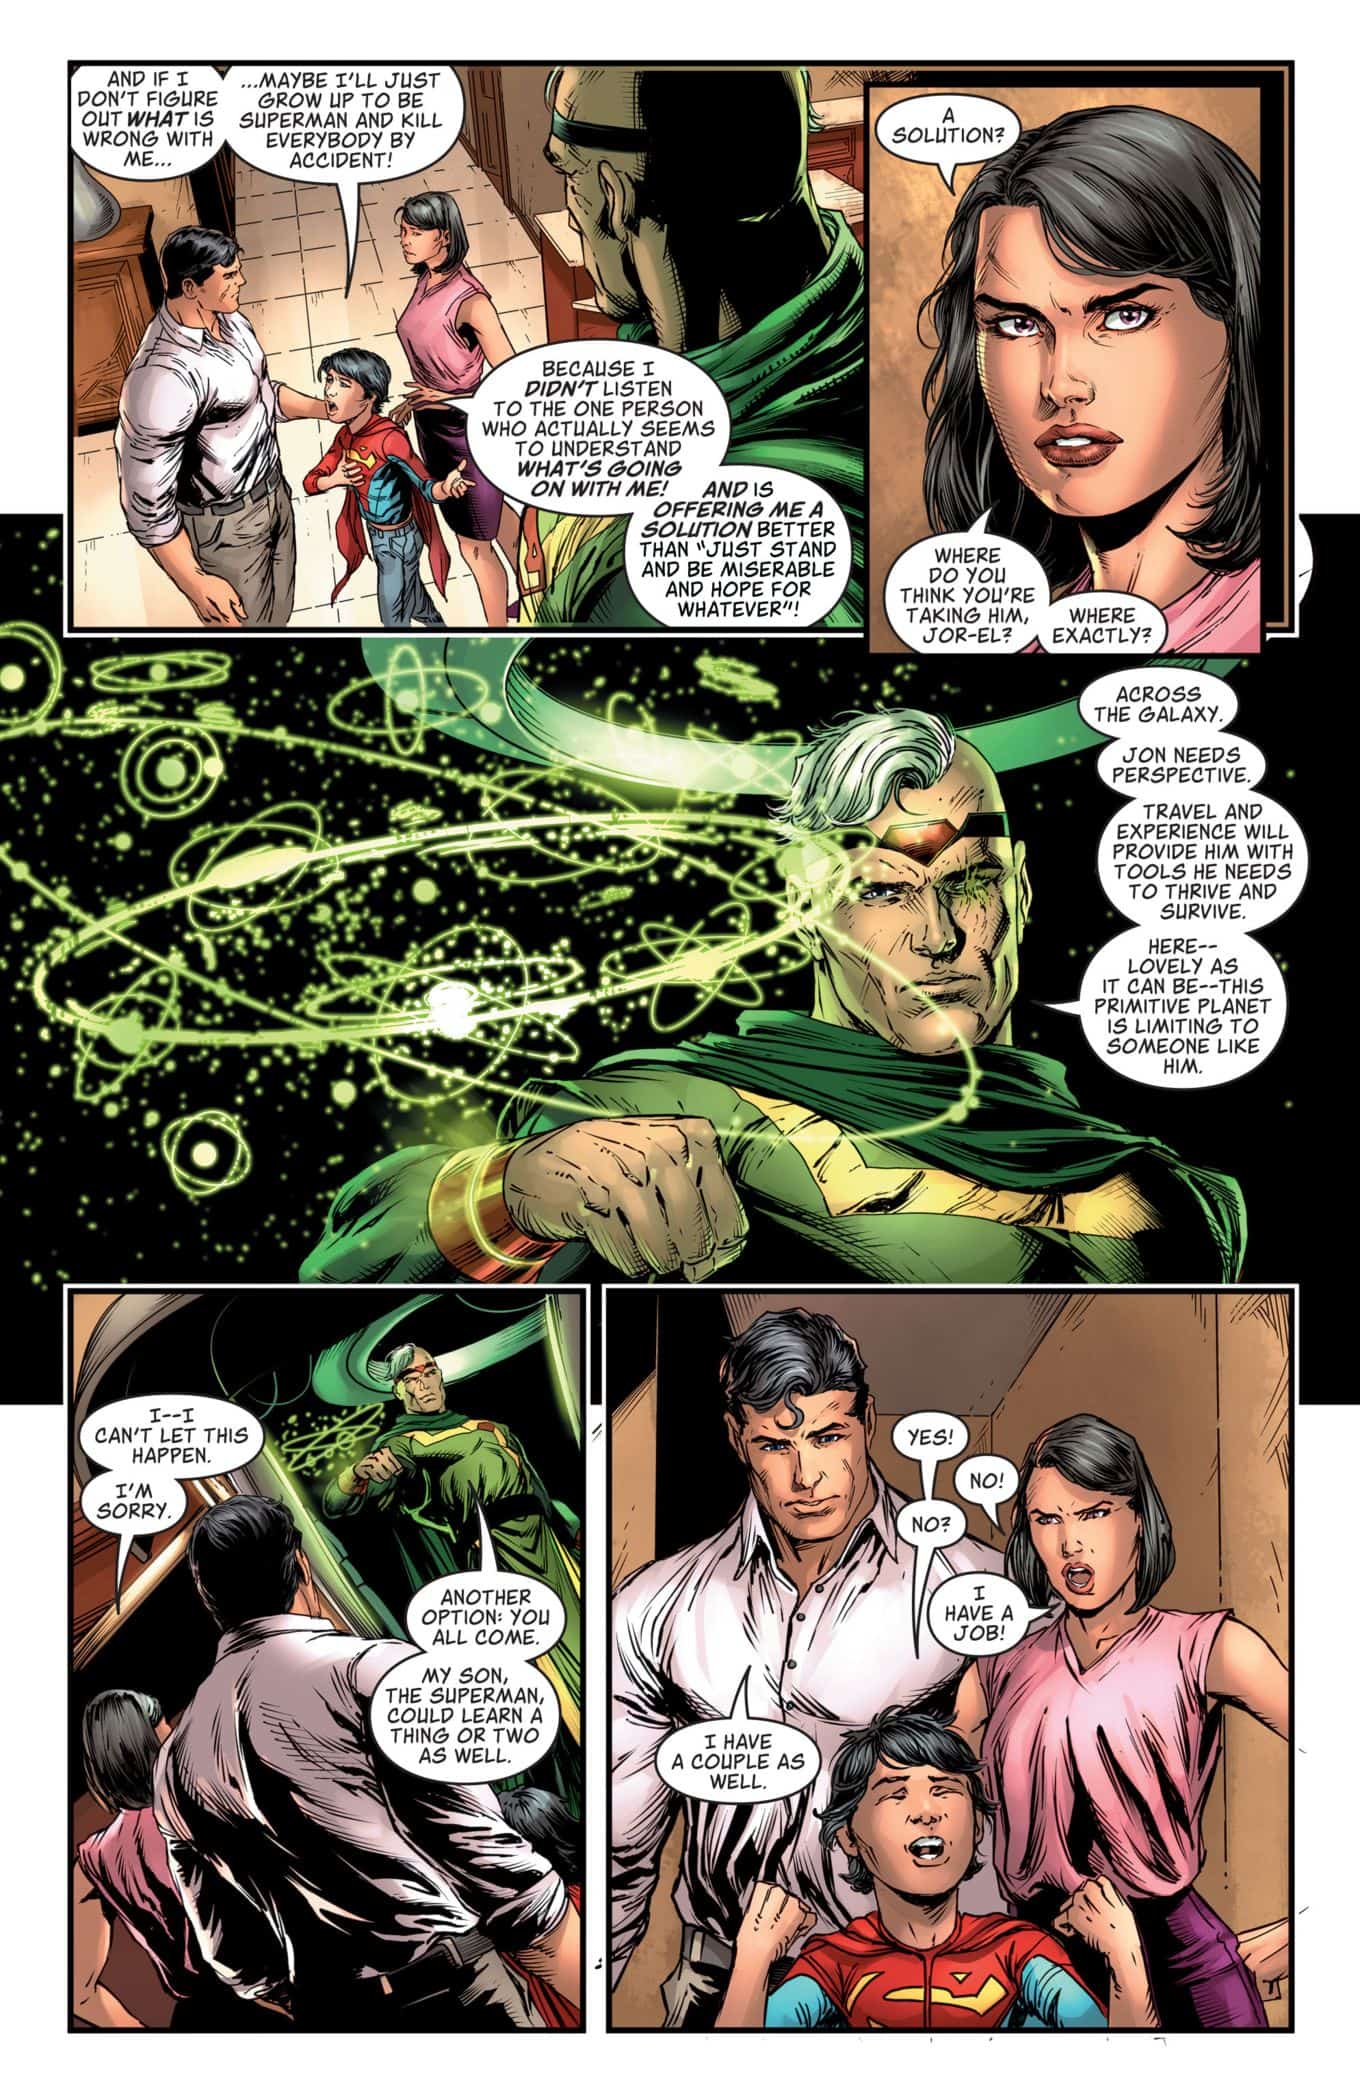 Jor-El & Lois Lane  Man of Steel 